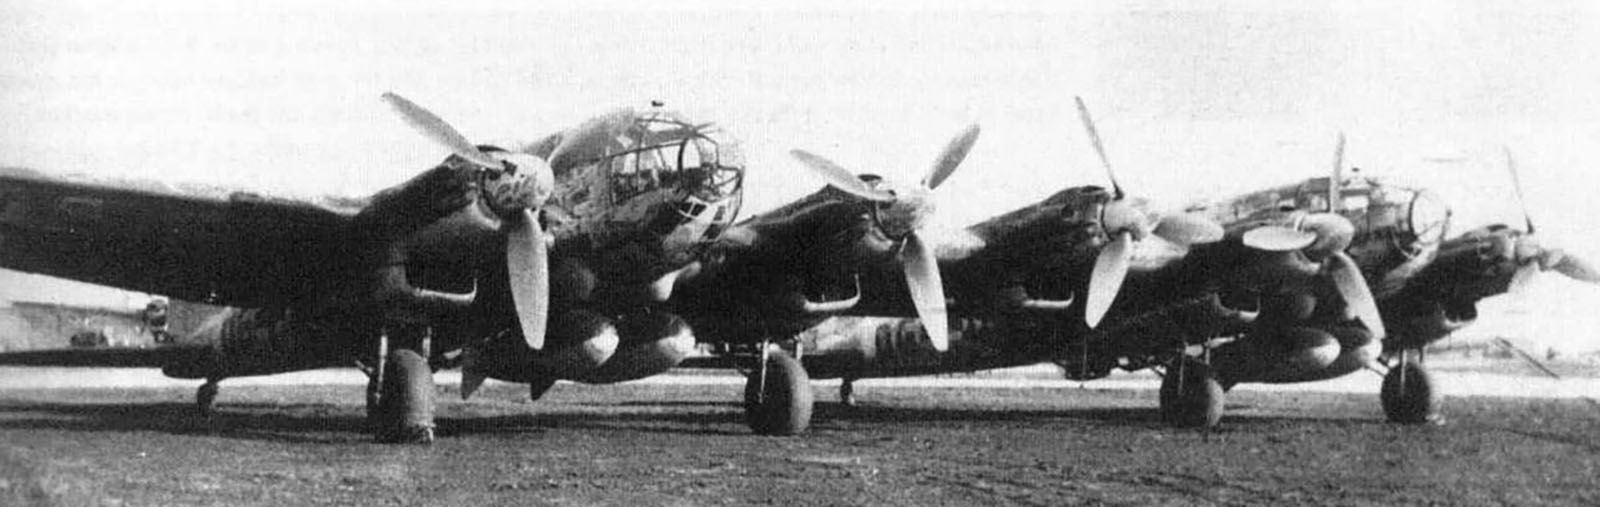 Heinkel He 111Z Zwilling Stkz DG+xx 01